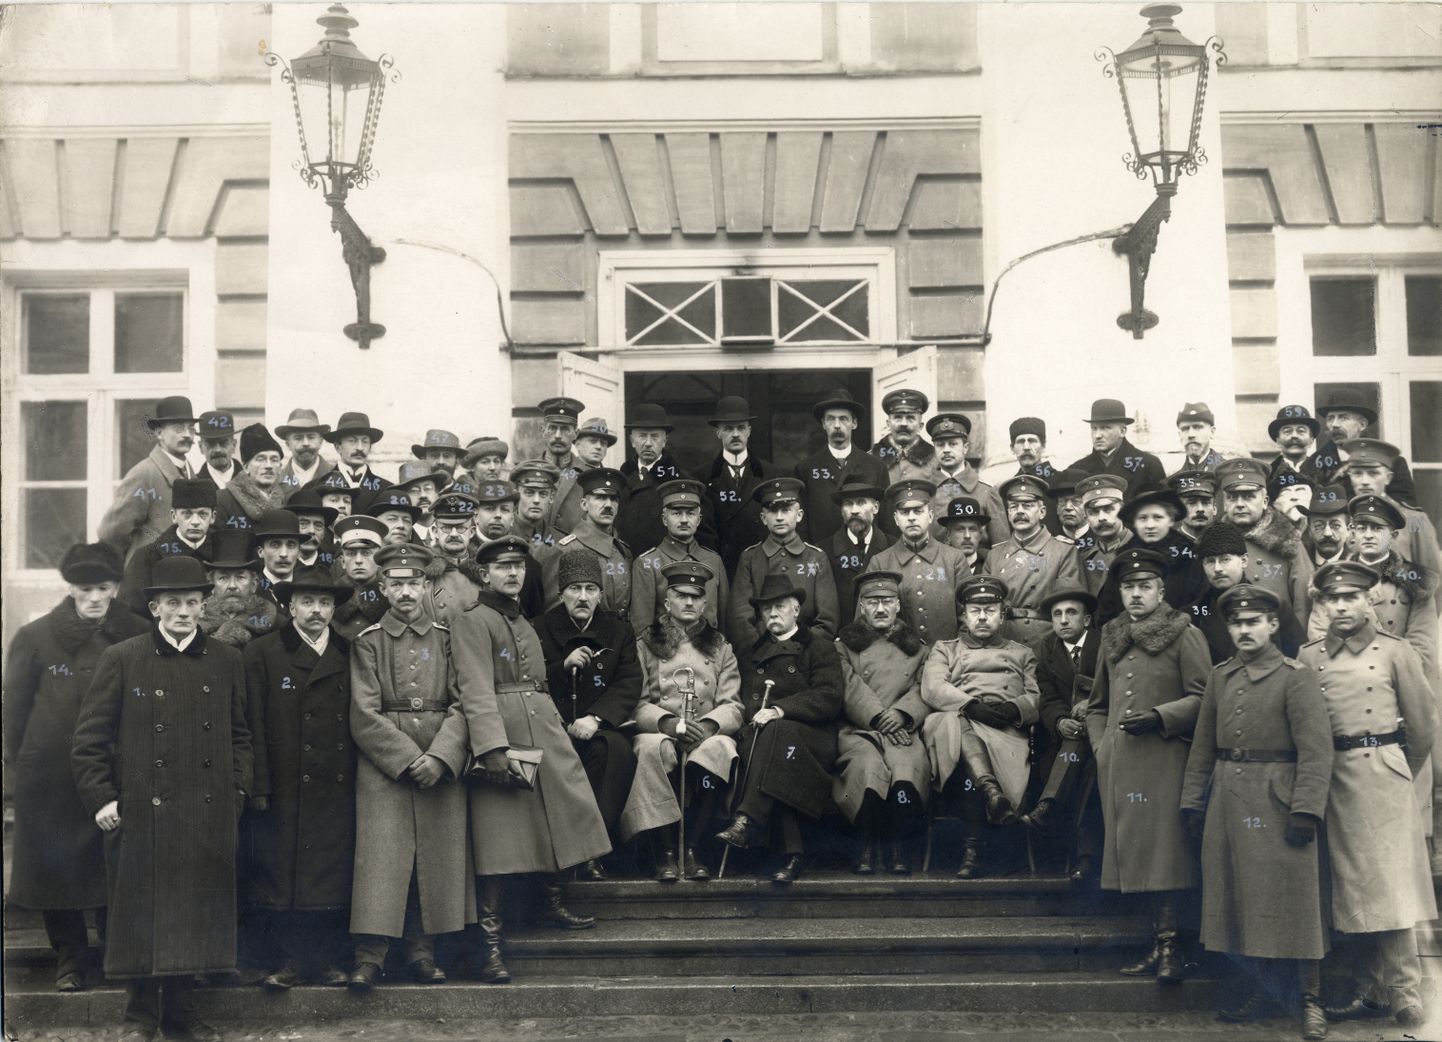 Landesuniversitäti õppejõud ja teenistujad 1918. aasta oktoobris ülikooli peahoone trepil. Võimalik, et Hans Helfritz saatis selle foto oma peamisele nõuandjale Preisi haridus­ministeeriumis Carl Beckerile. Ilmselt seetõttu on kõik inimesed pildil ka nummerdatud.